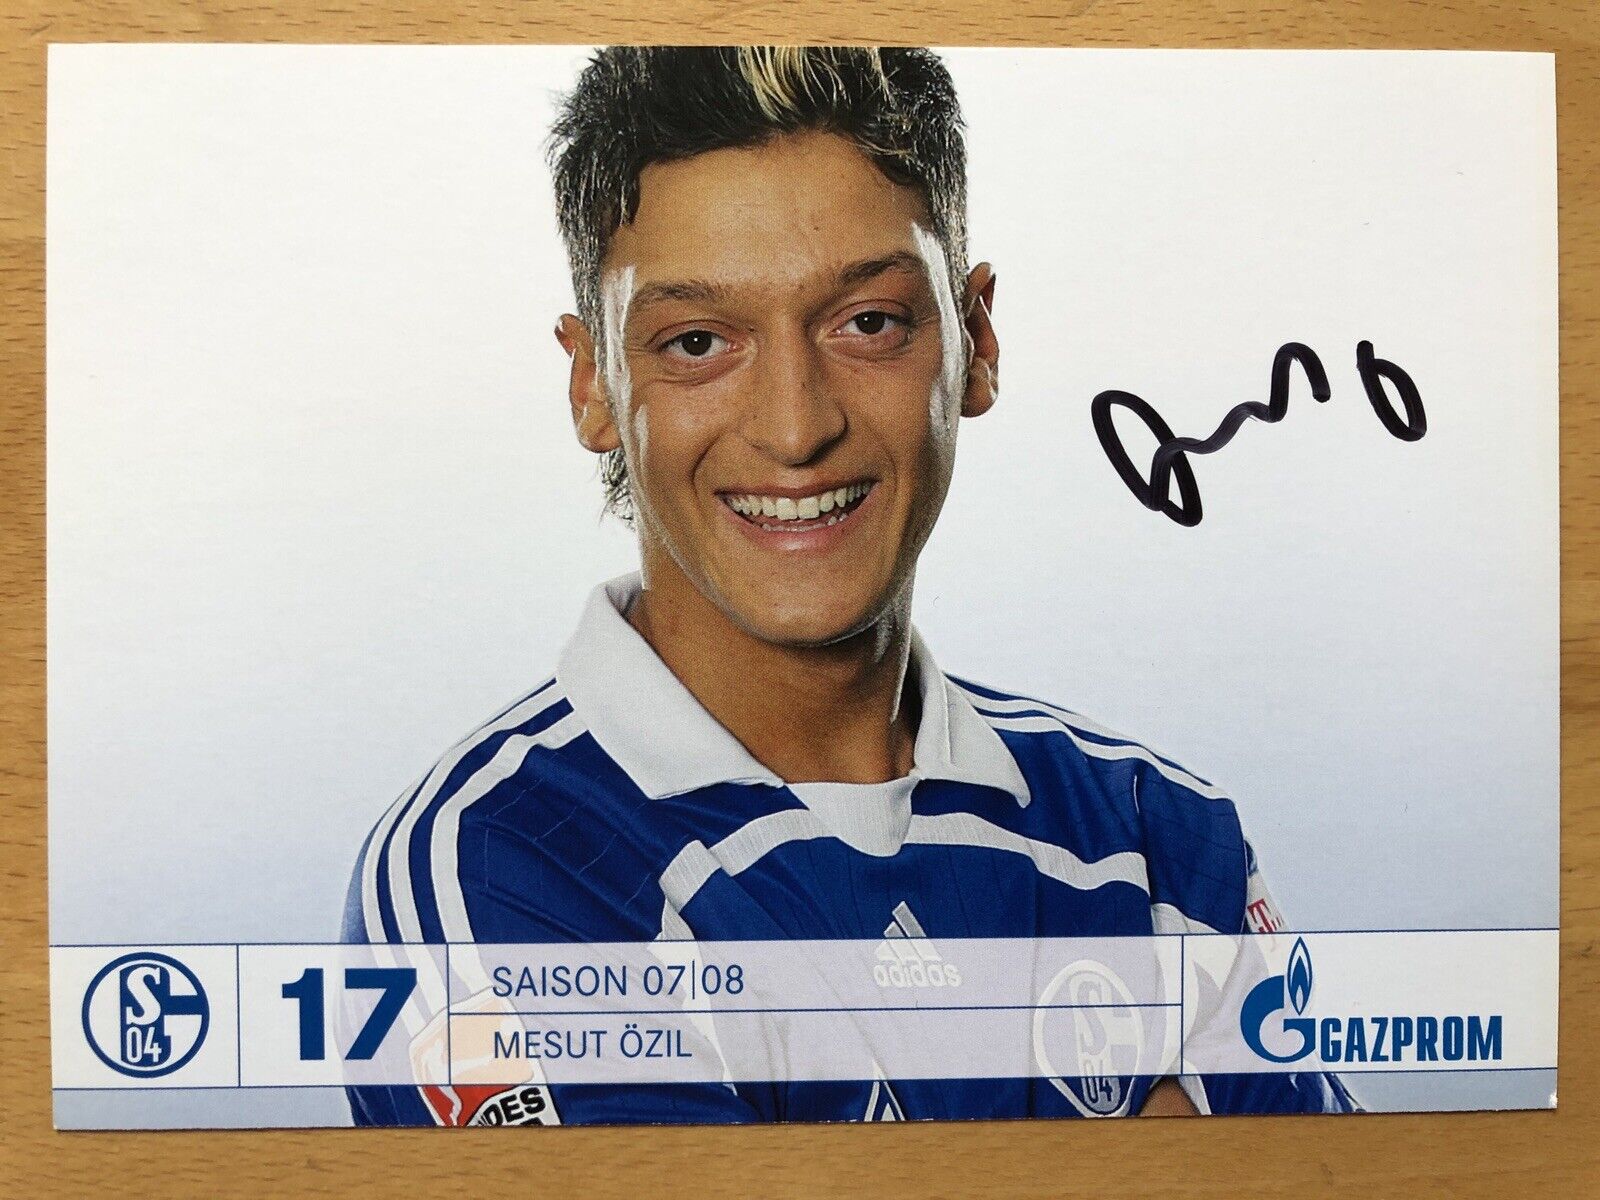 Mesut Özil Ak FC Schalke 04 2007-08 Autograph Card Original Signed